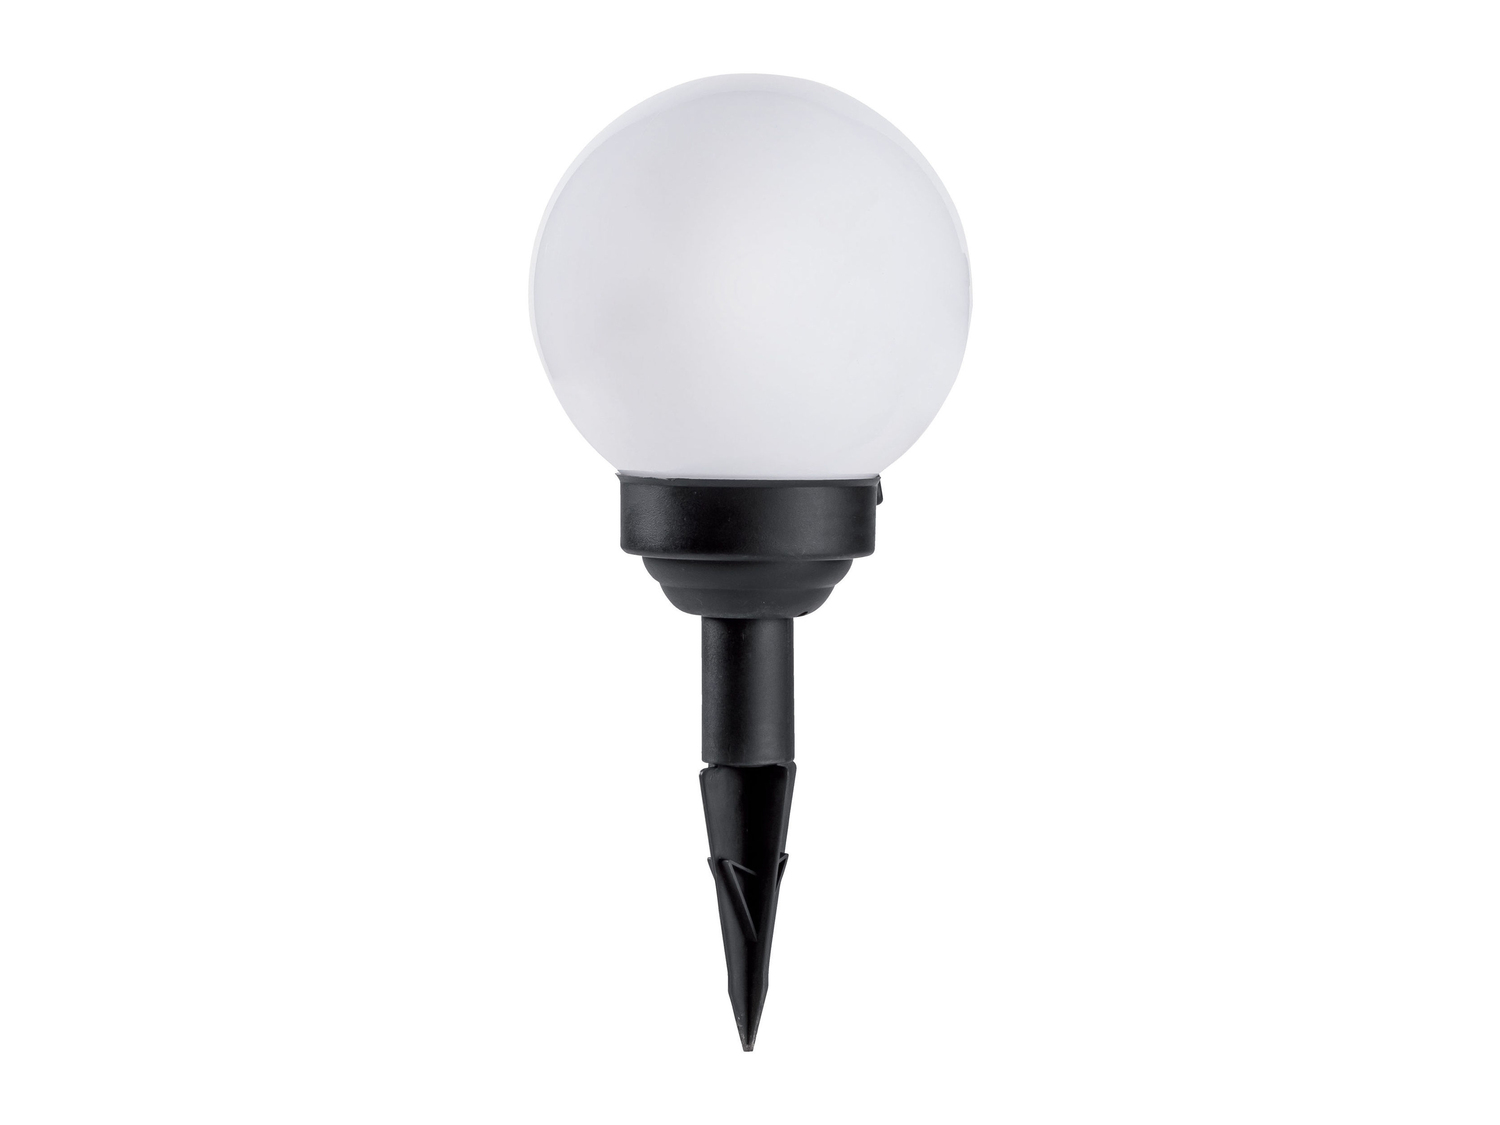 Lampada LED da giardino ad energia solare Livarno Lux, prezzo 4.99 € 
- Si accende ...